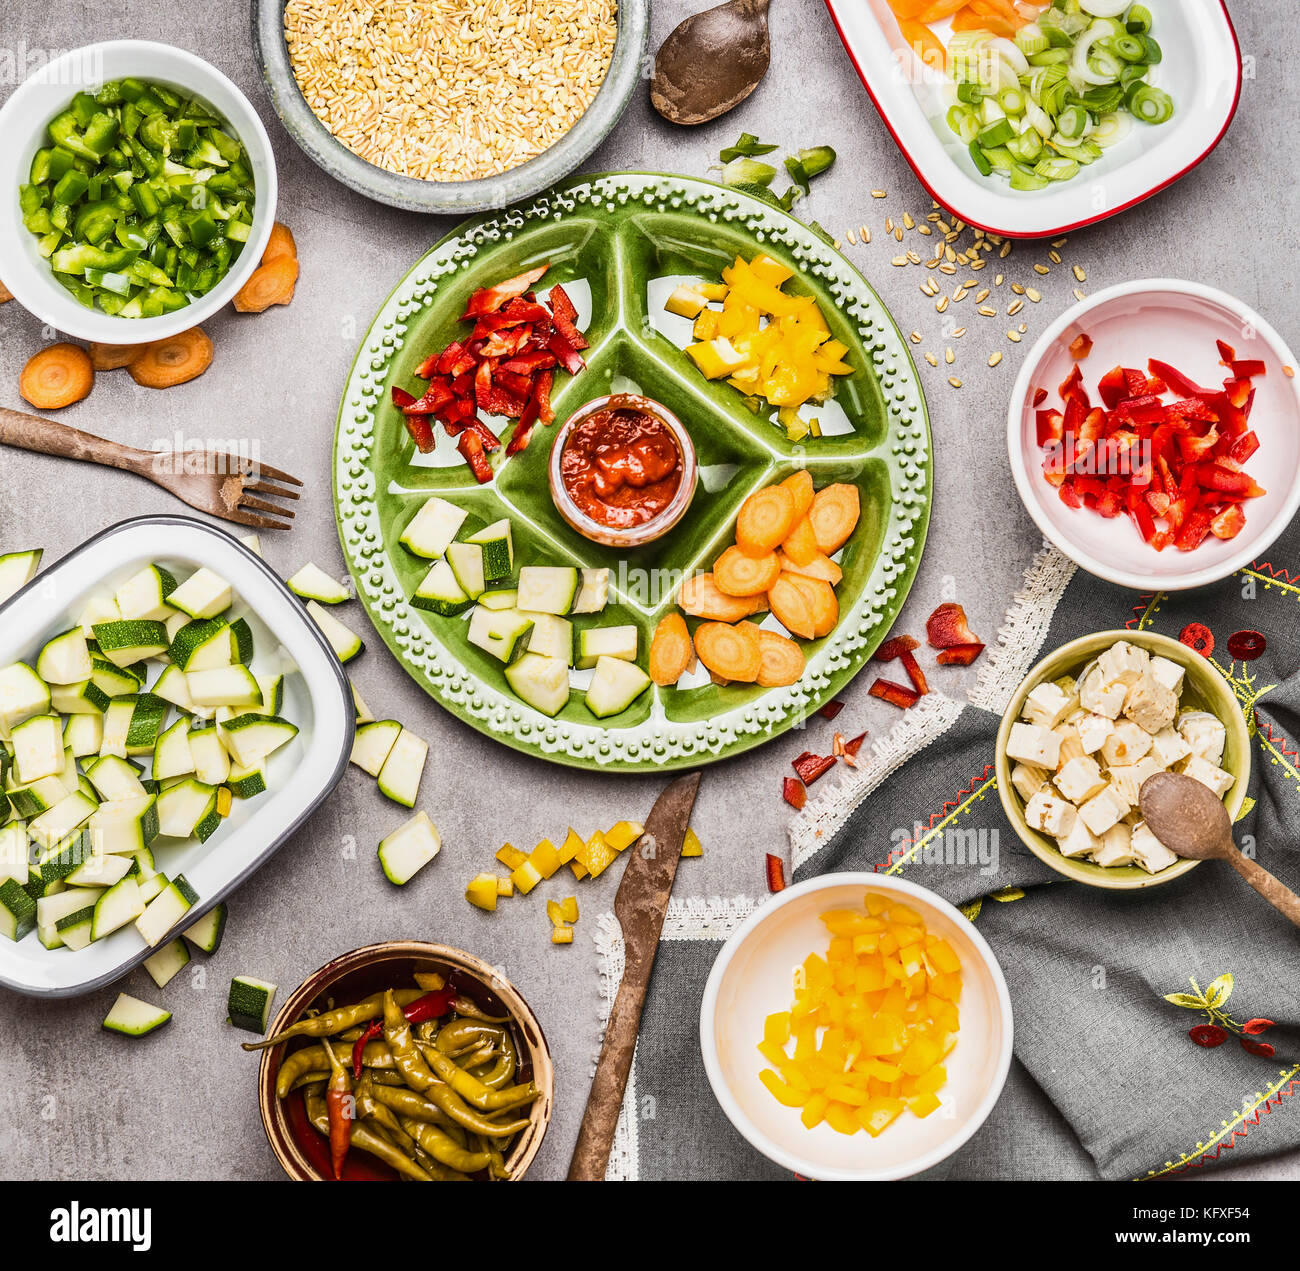 Gesunde Zubereitung: Darm bunte Gemüse auf grünem Teller und Schüsseln mit Gerste Saatgut und Feta. Salat oder Eintopf Zutaten. Stockfoto